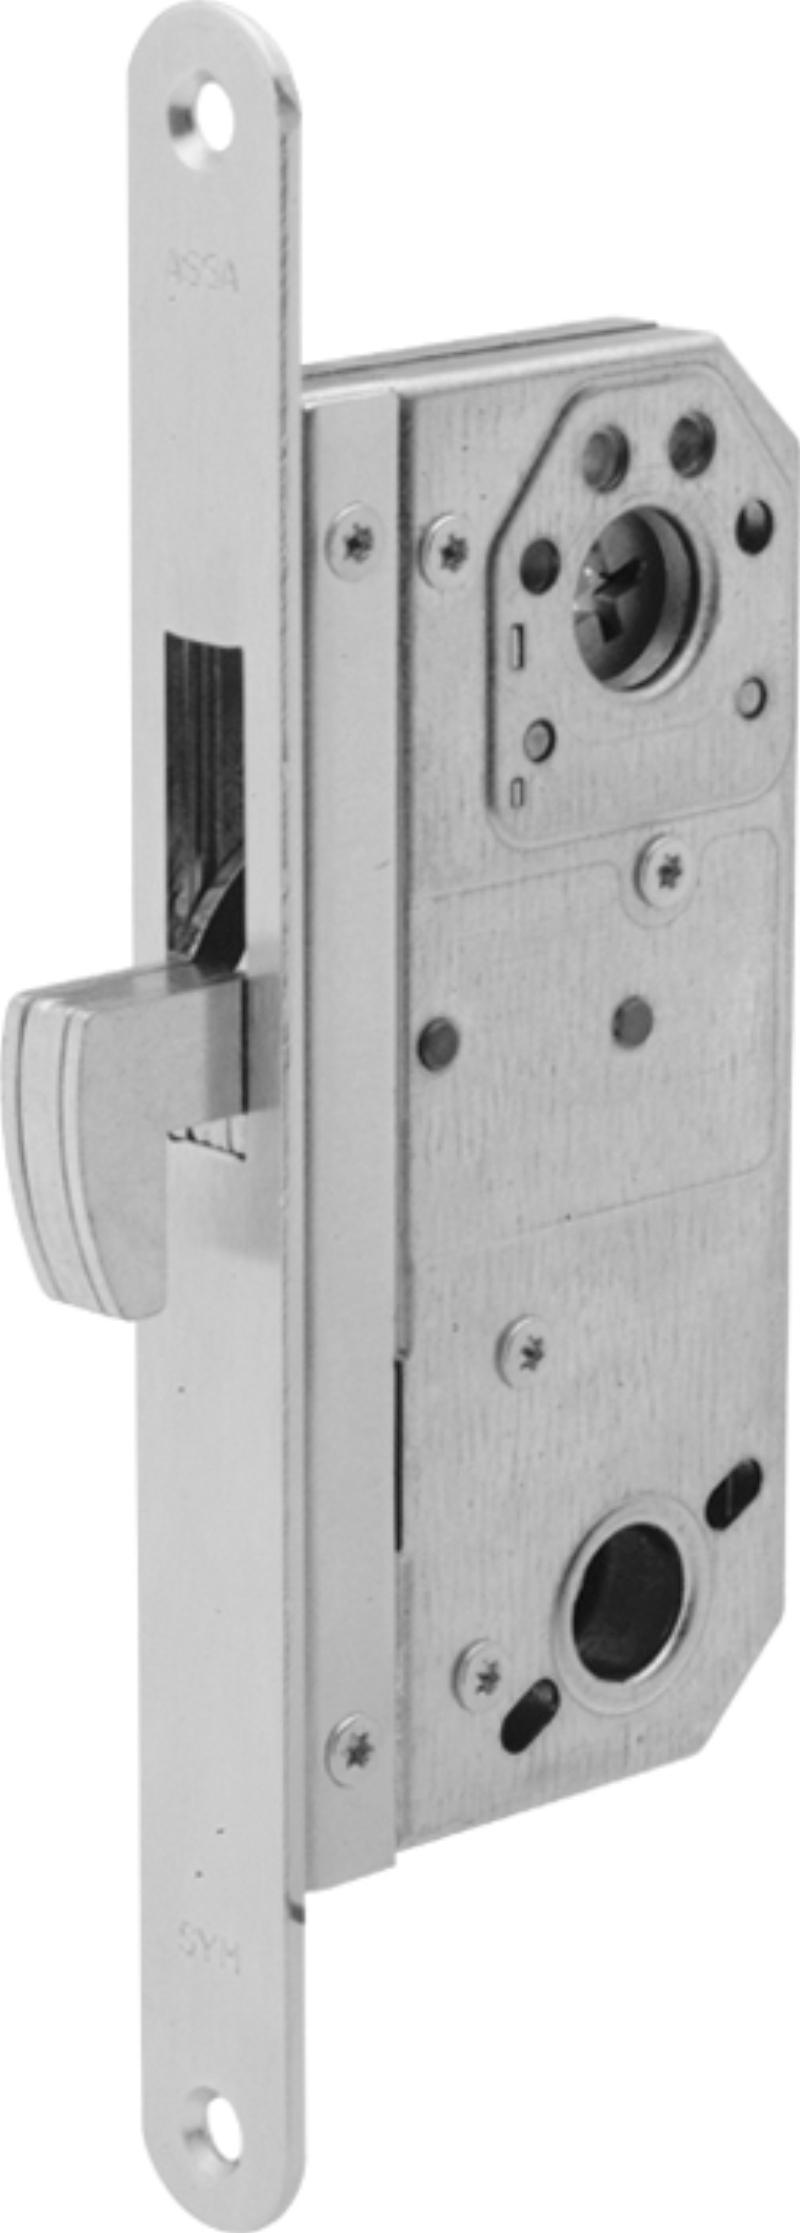 Assa låseboks 9787 m/tinn, m. mikrobryter (521119)